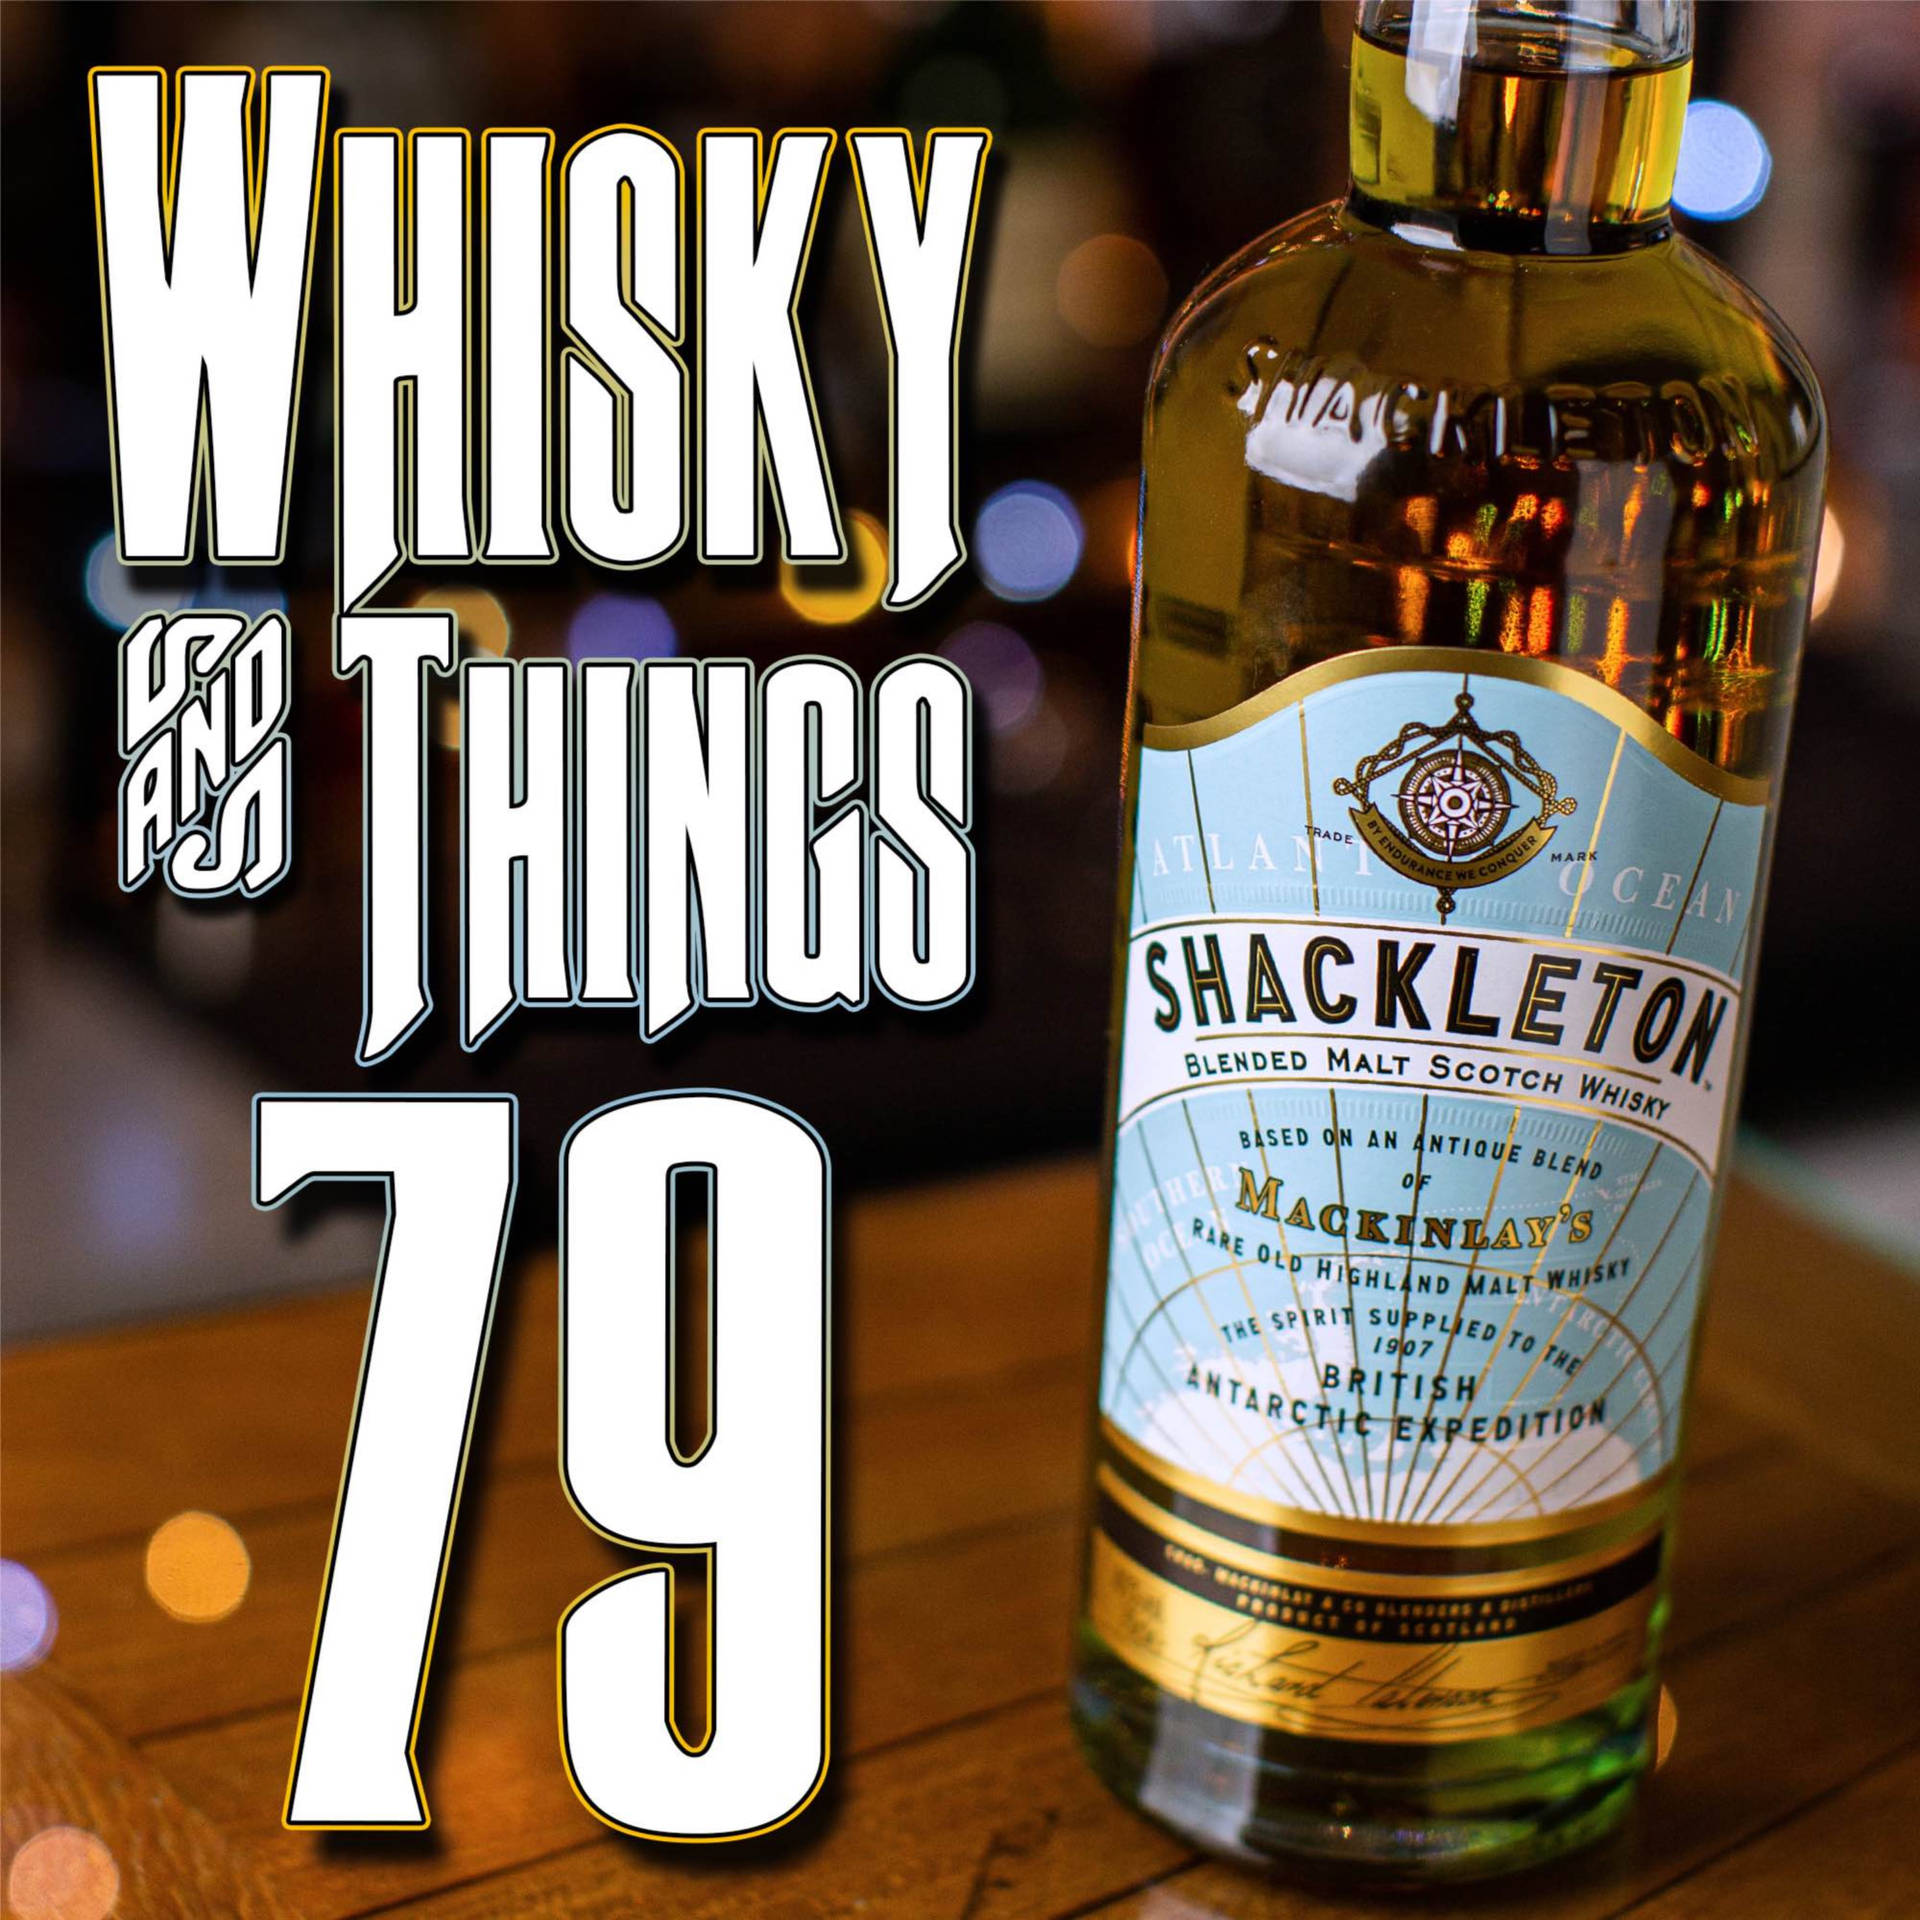 Shackleton Scotch Whisky Og 79 Ting Udskrifter. Wallpaper